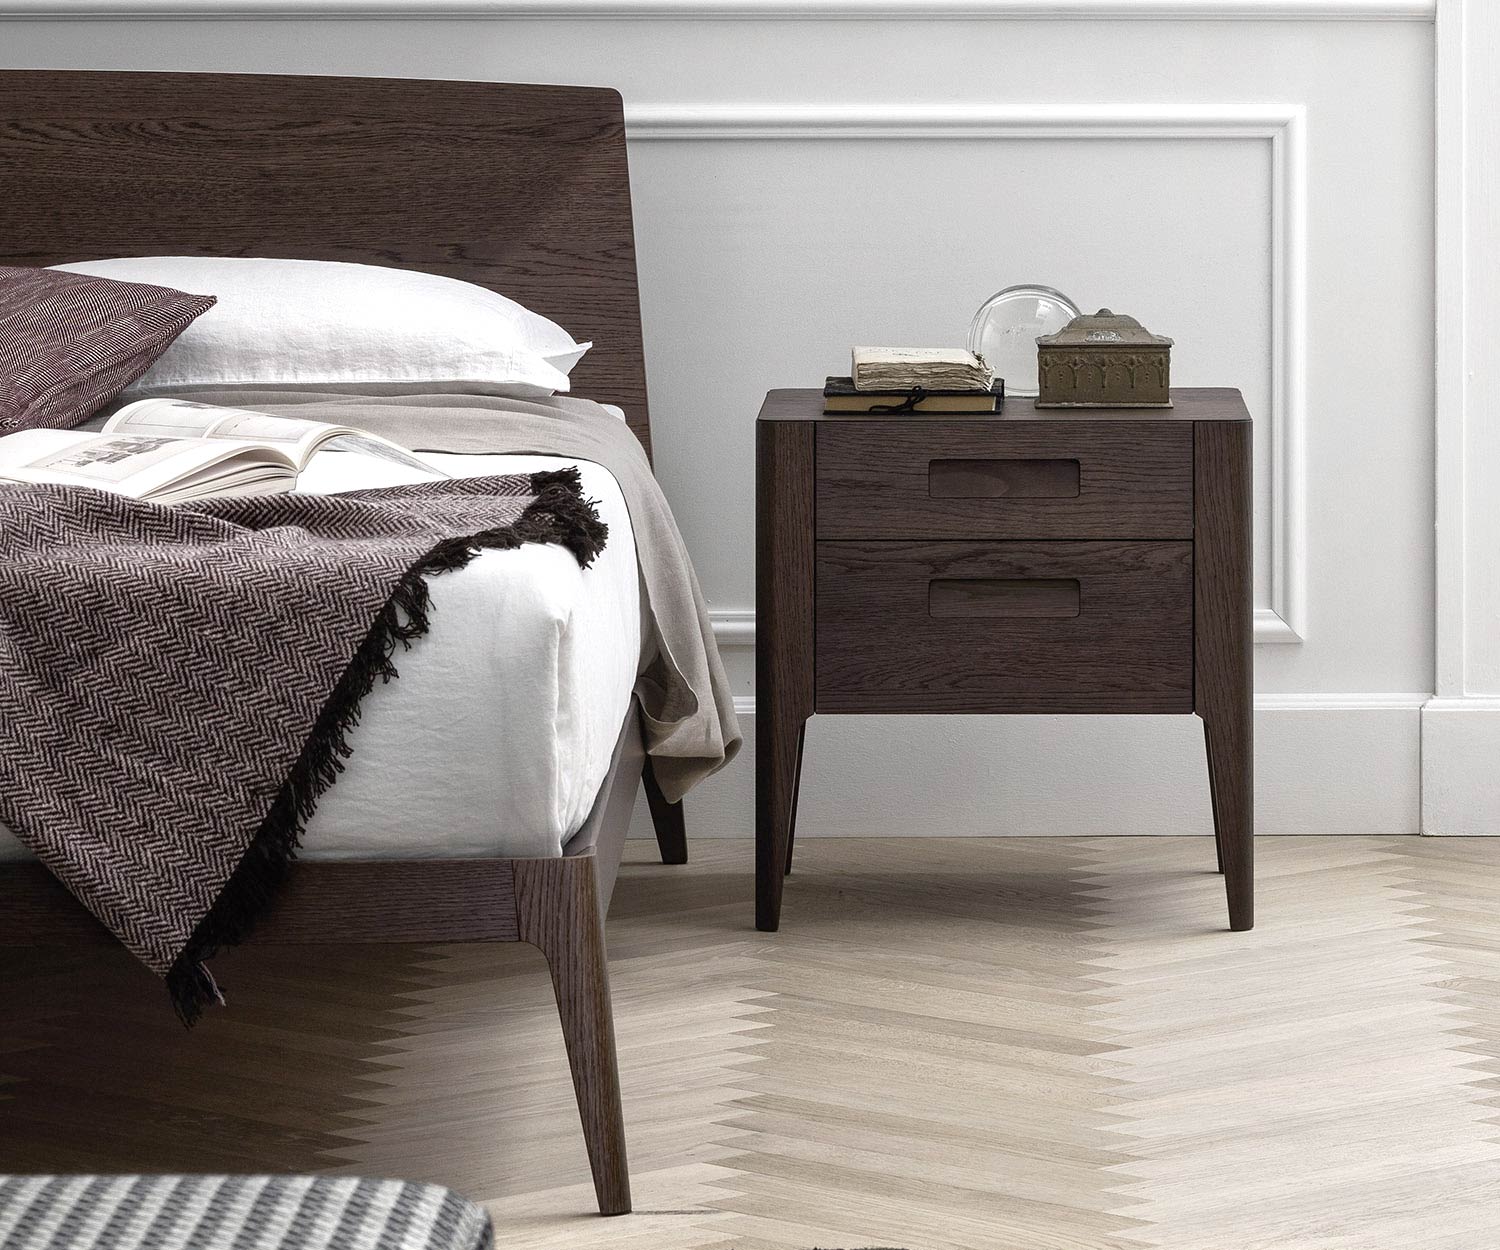 Modernes dunkles Designer Holzbett mit Nachttisch im Schlafzimmer